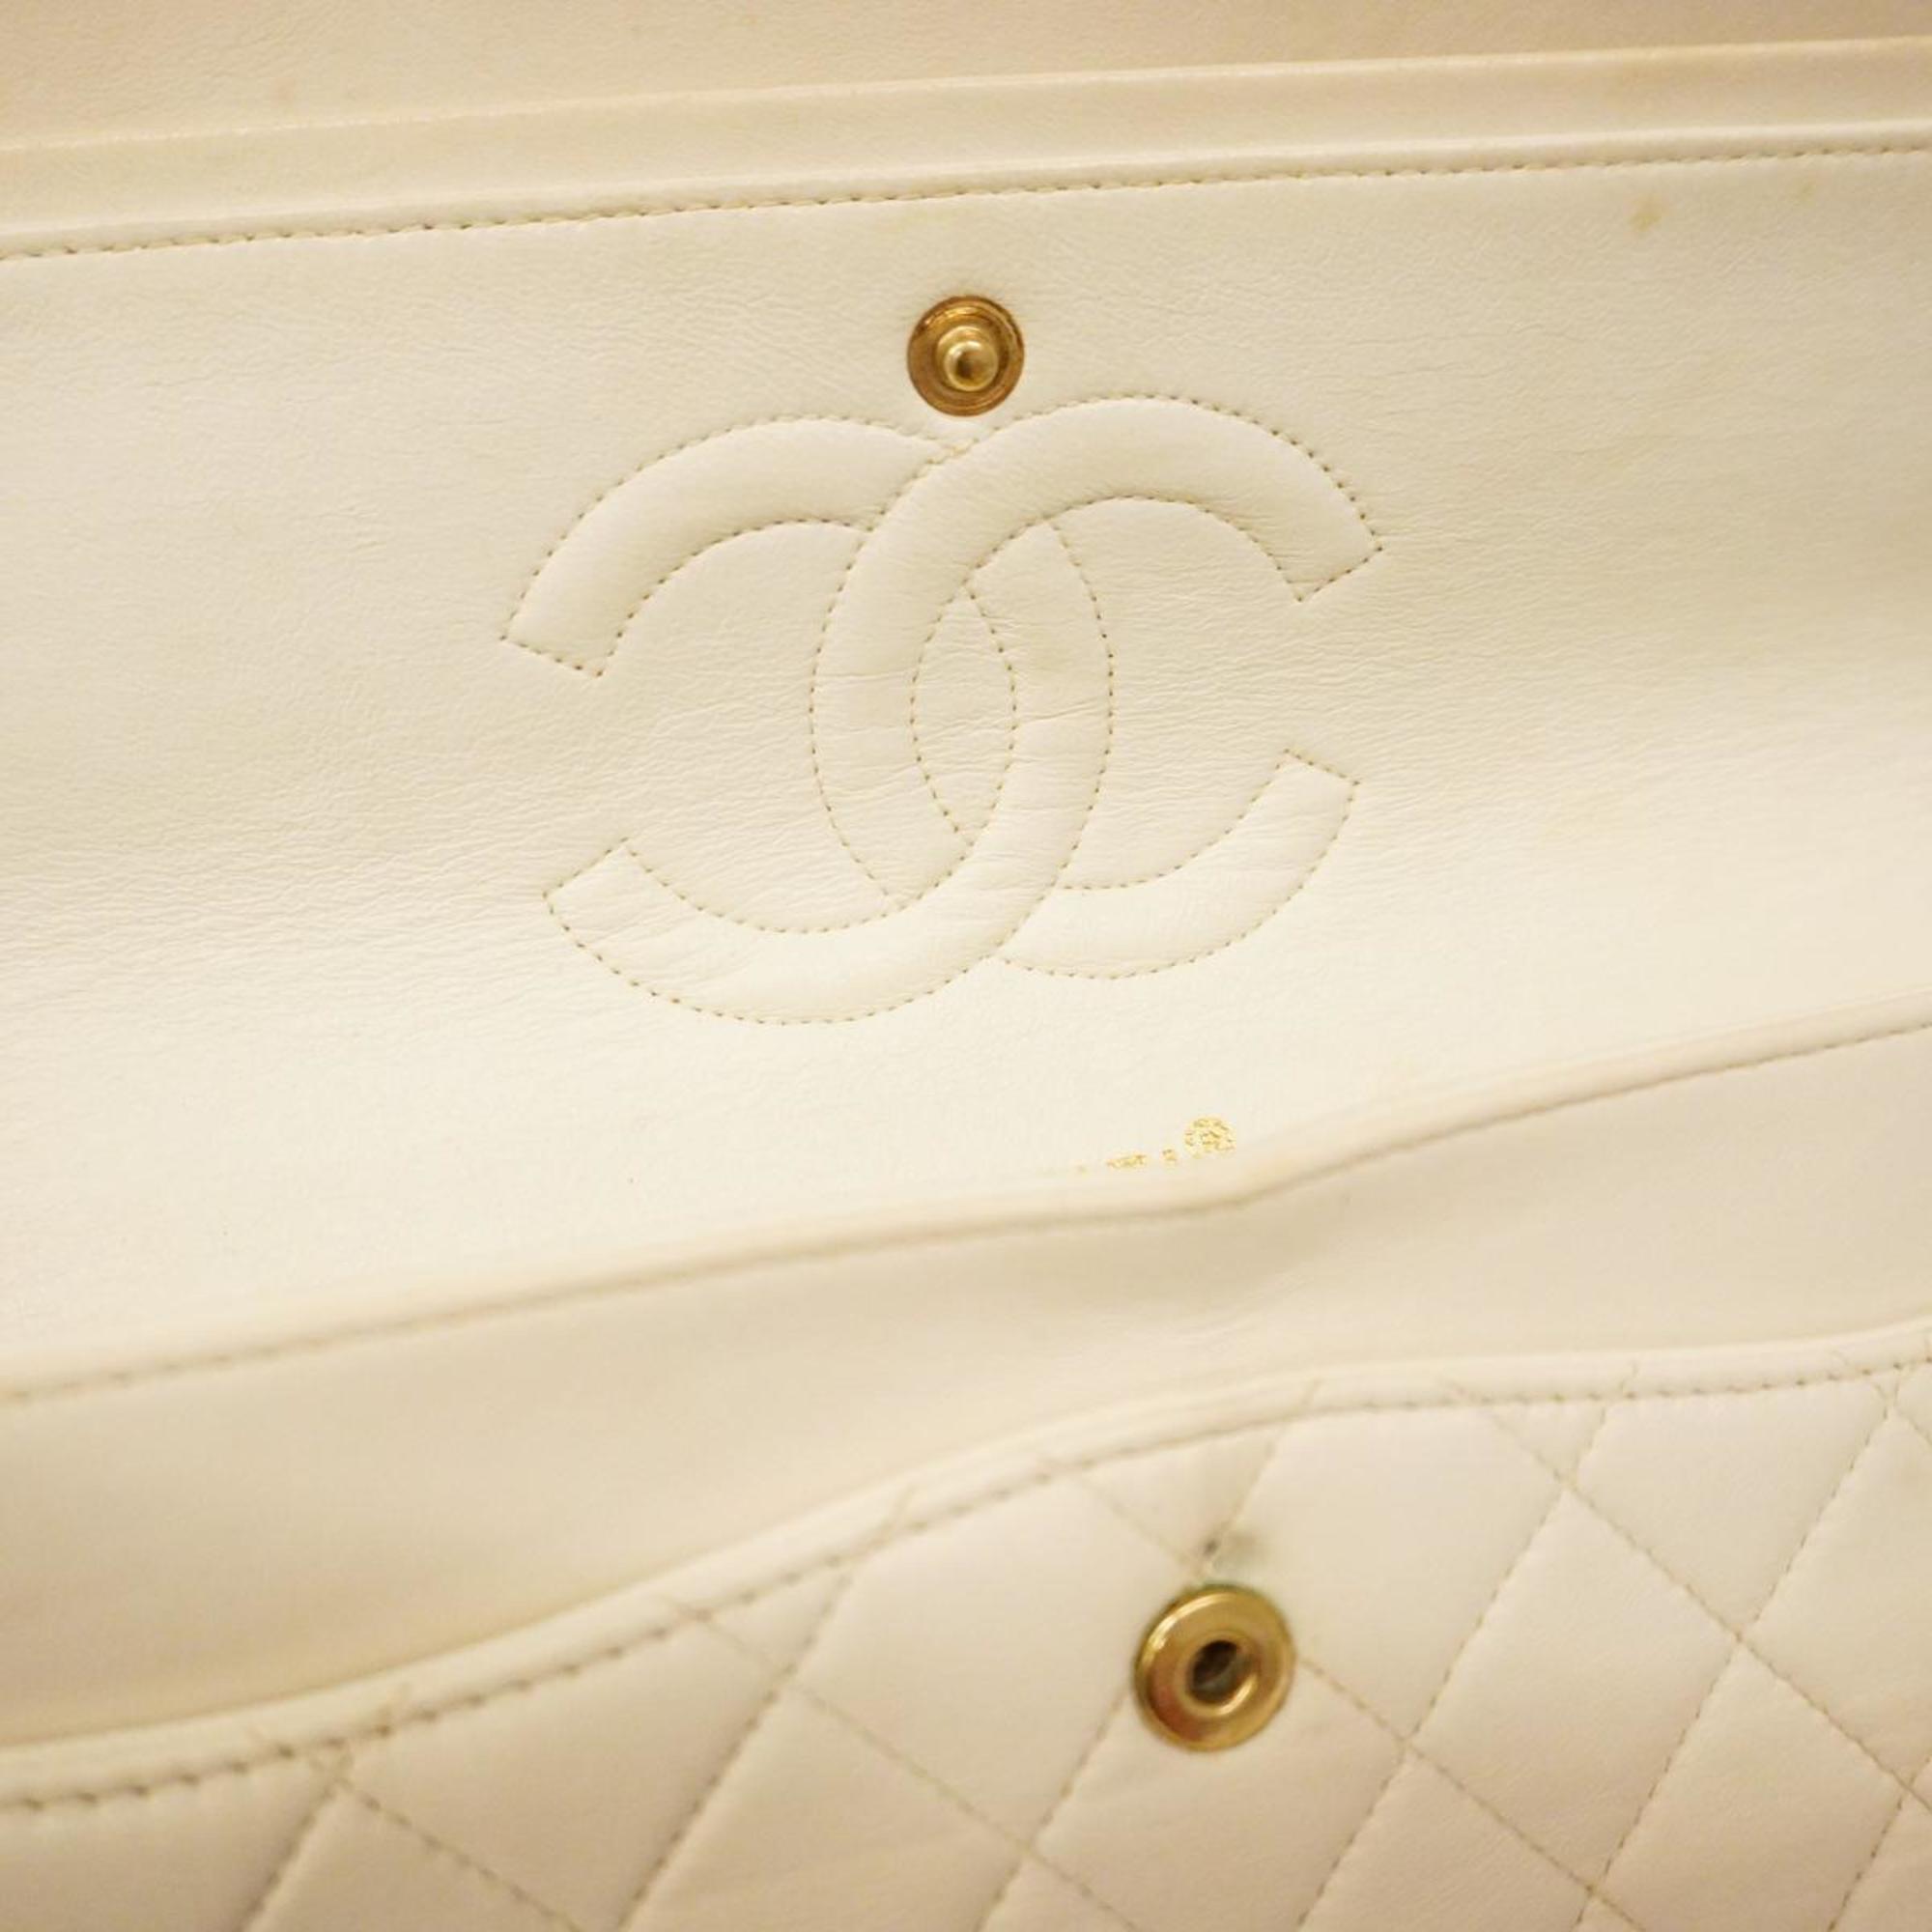 シャネル(Chanel) シャネル ショルダーバッグ Wフラップ Wチェーン ラムスキン ホワイト   レディース